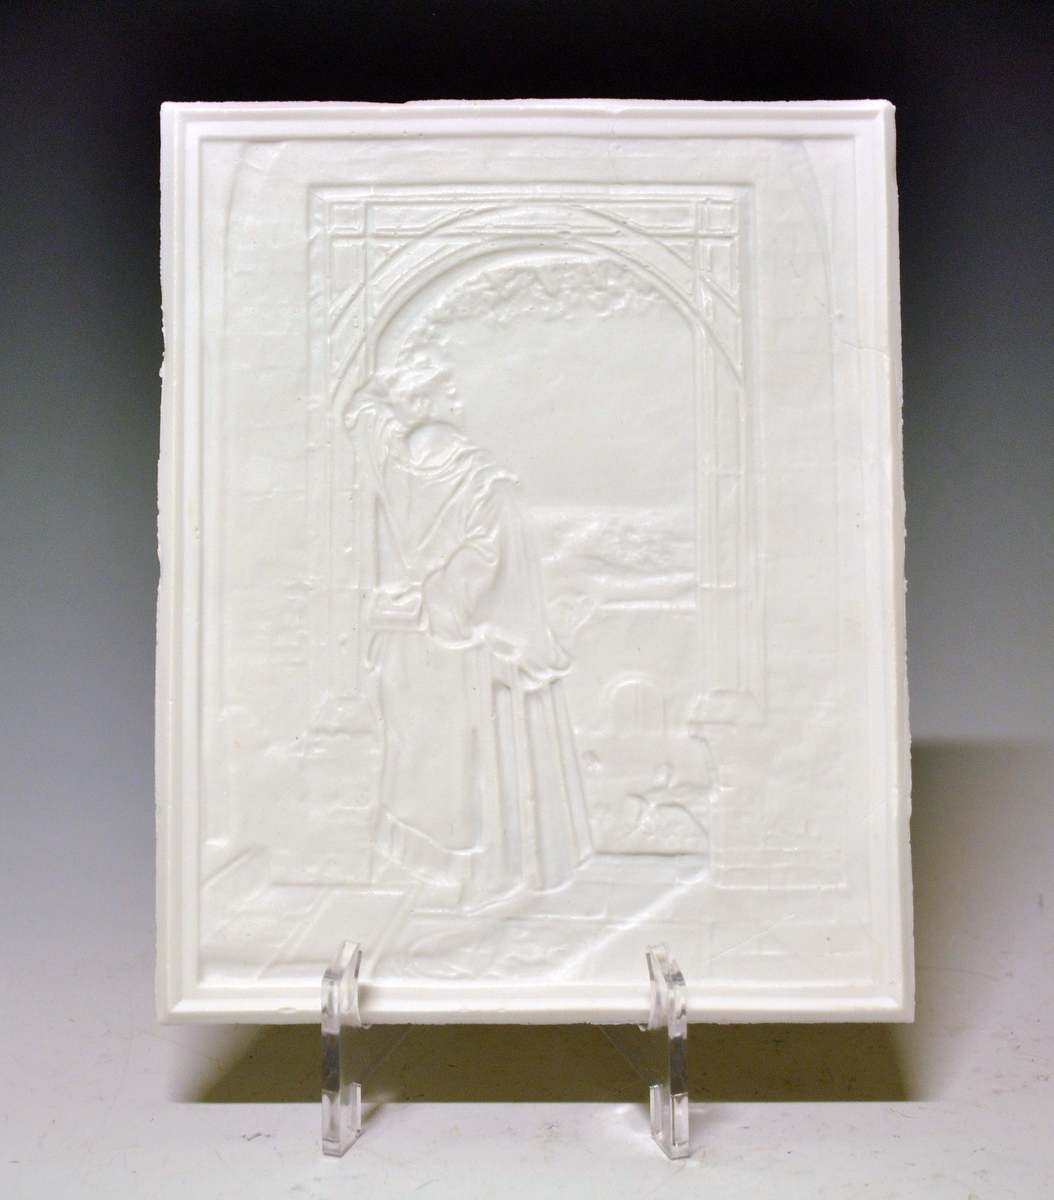 Litofani i porselen. Kalt lysbillede i priskuranten fra 1888. Motivet preget inn som relieff. Uglasert. Motiv: Figur i døråpning. Utsikt mot bygning og landskap.
Ustemplet.